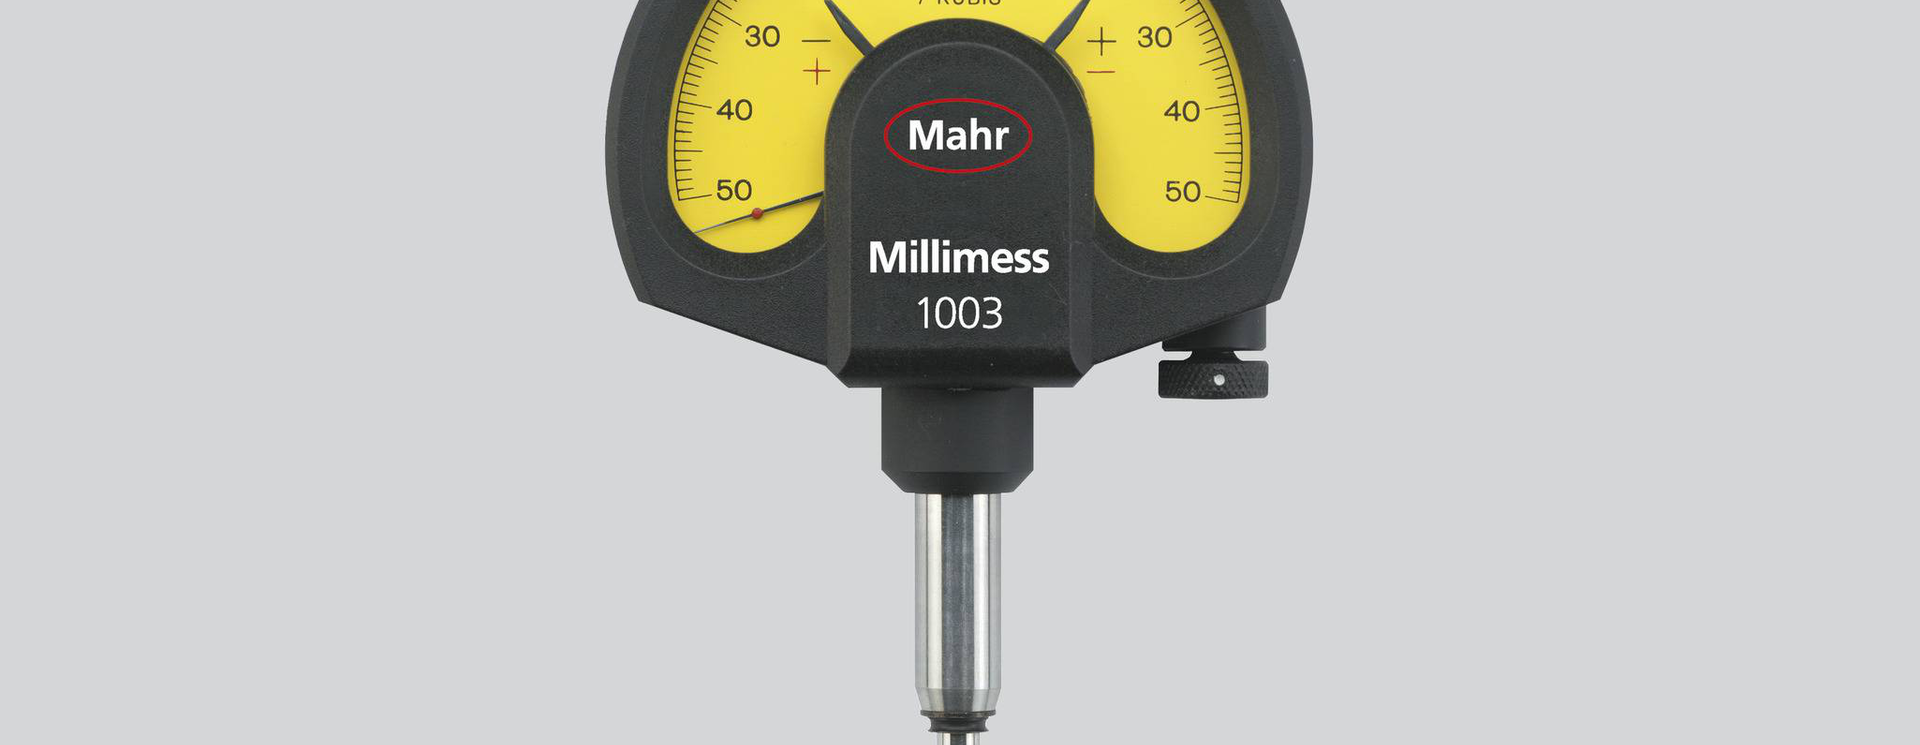 Comparateur de précision FM 1000 T - Echelle de mesure 1 mm - Rotation de  l'aiguille 0,2 mm